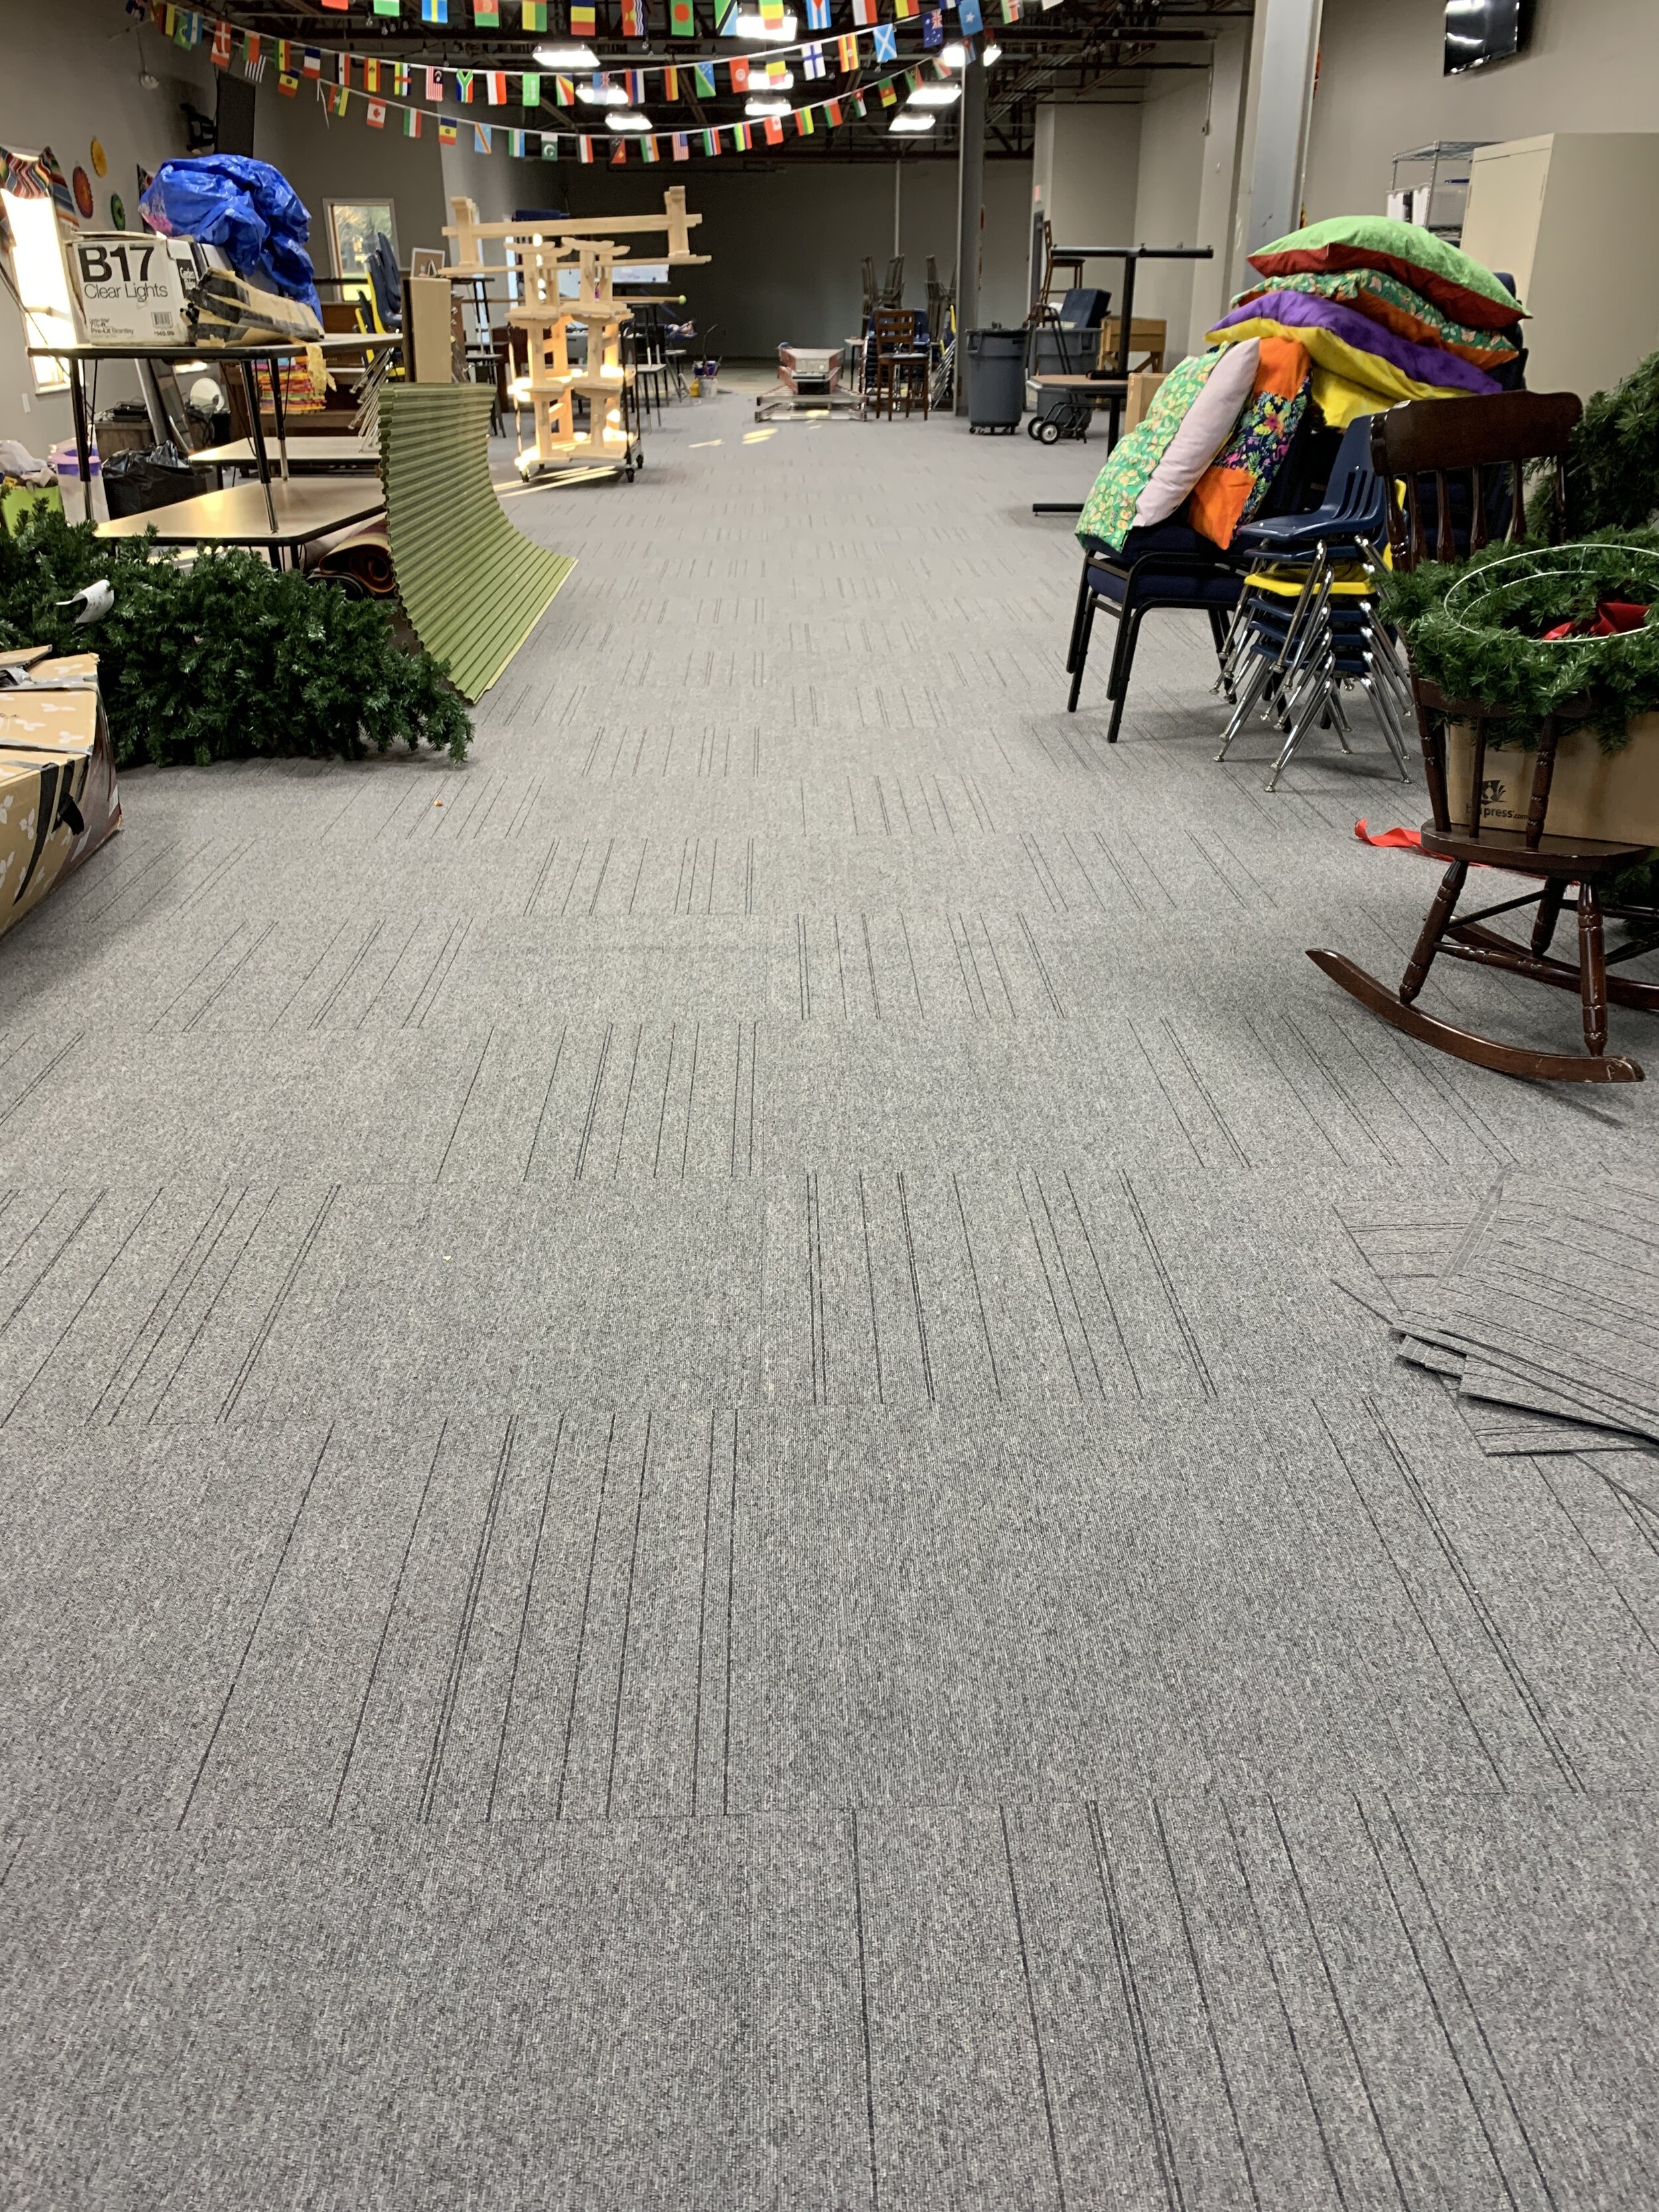 CM New Carpet2.JPG